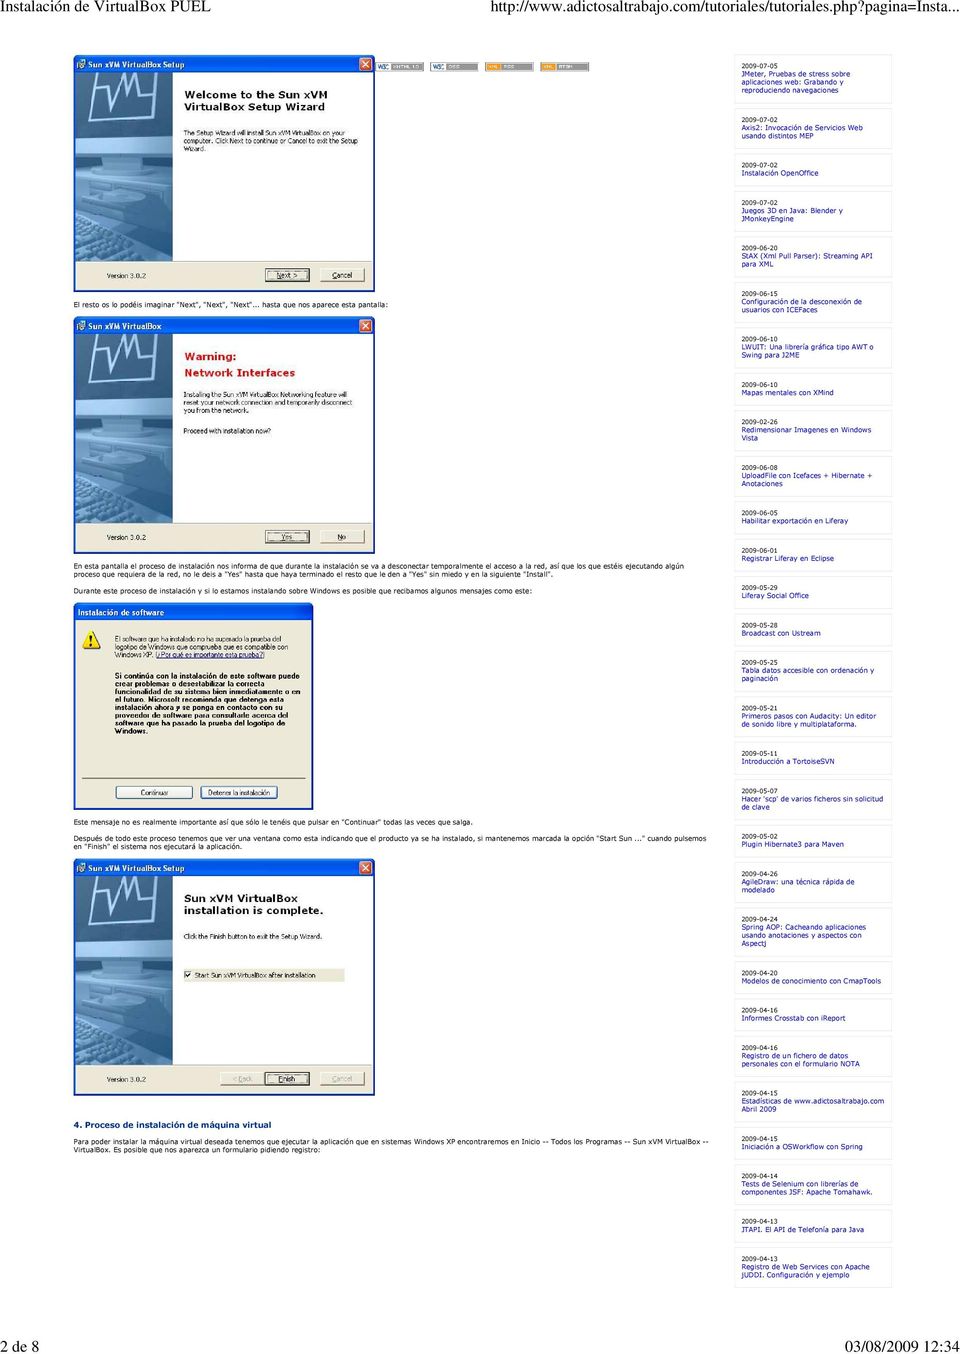 .. hasta que nos aparece esta pantalla: 2009-06-15 Configuración de la desconexión de usuarios con ICEFaces 2009-06-10 LWUIT: Una librería gráfica tipo AWT o Swing para J2ME 2009-06-10 Mapas mentales